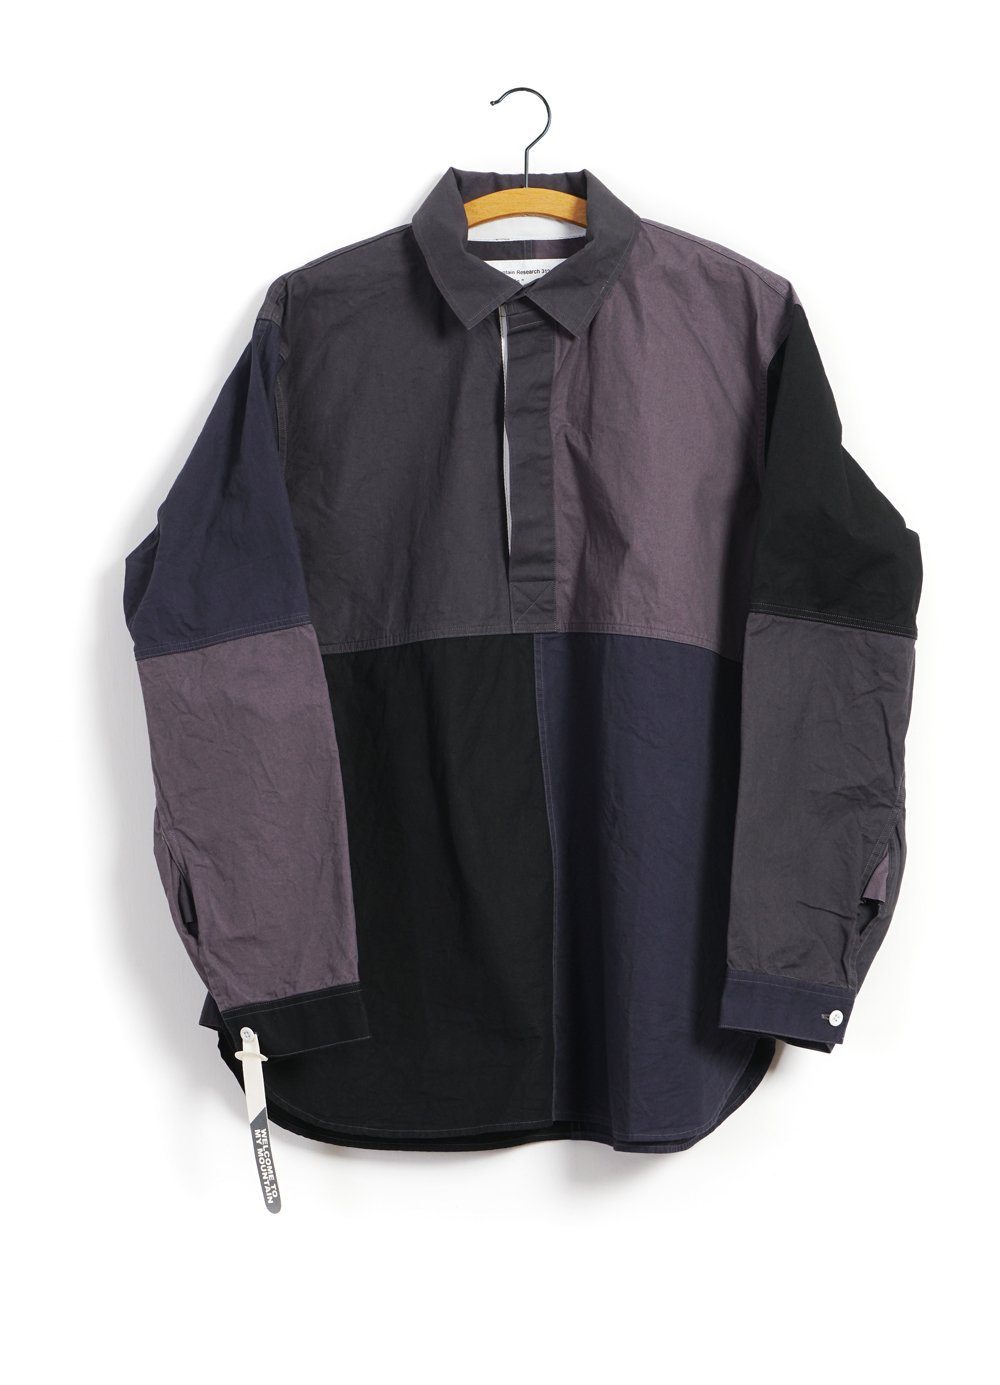 MOUNTAIN RESEARCH - PATCHWORK SHIRT | Grey - HANSEN Garments